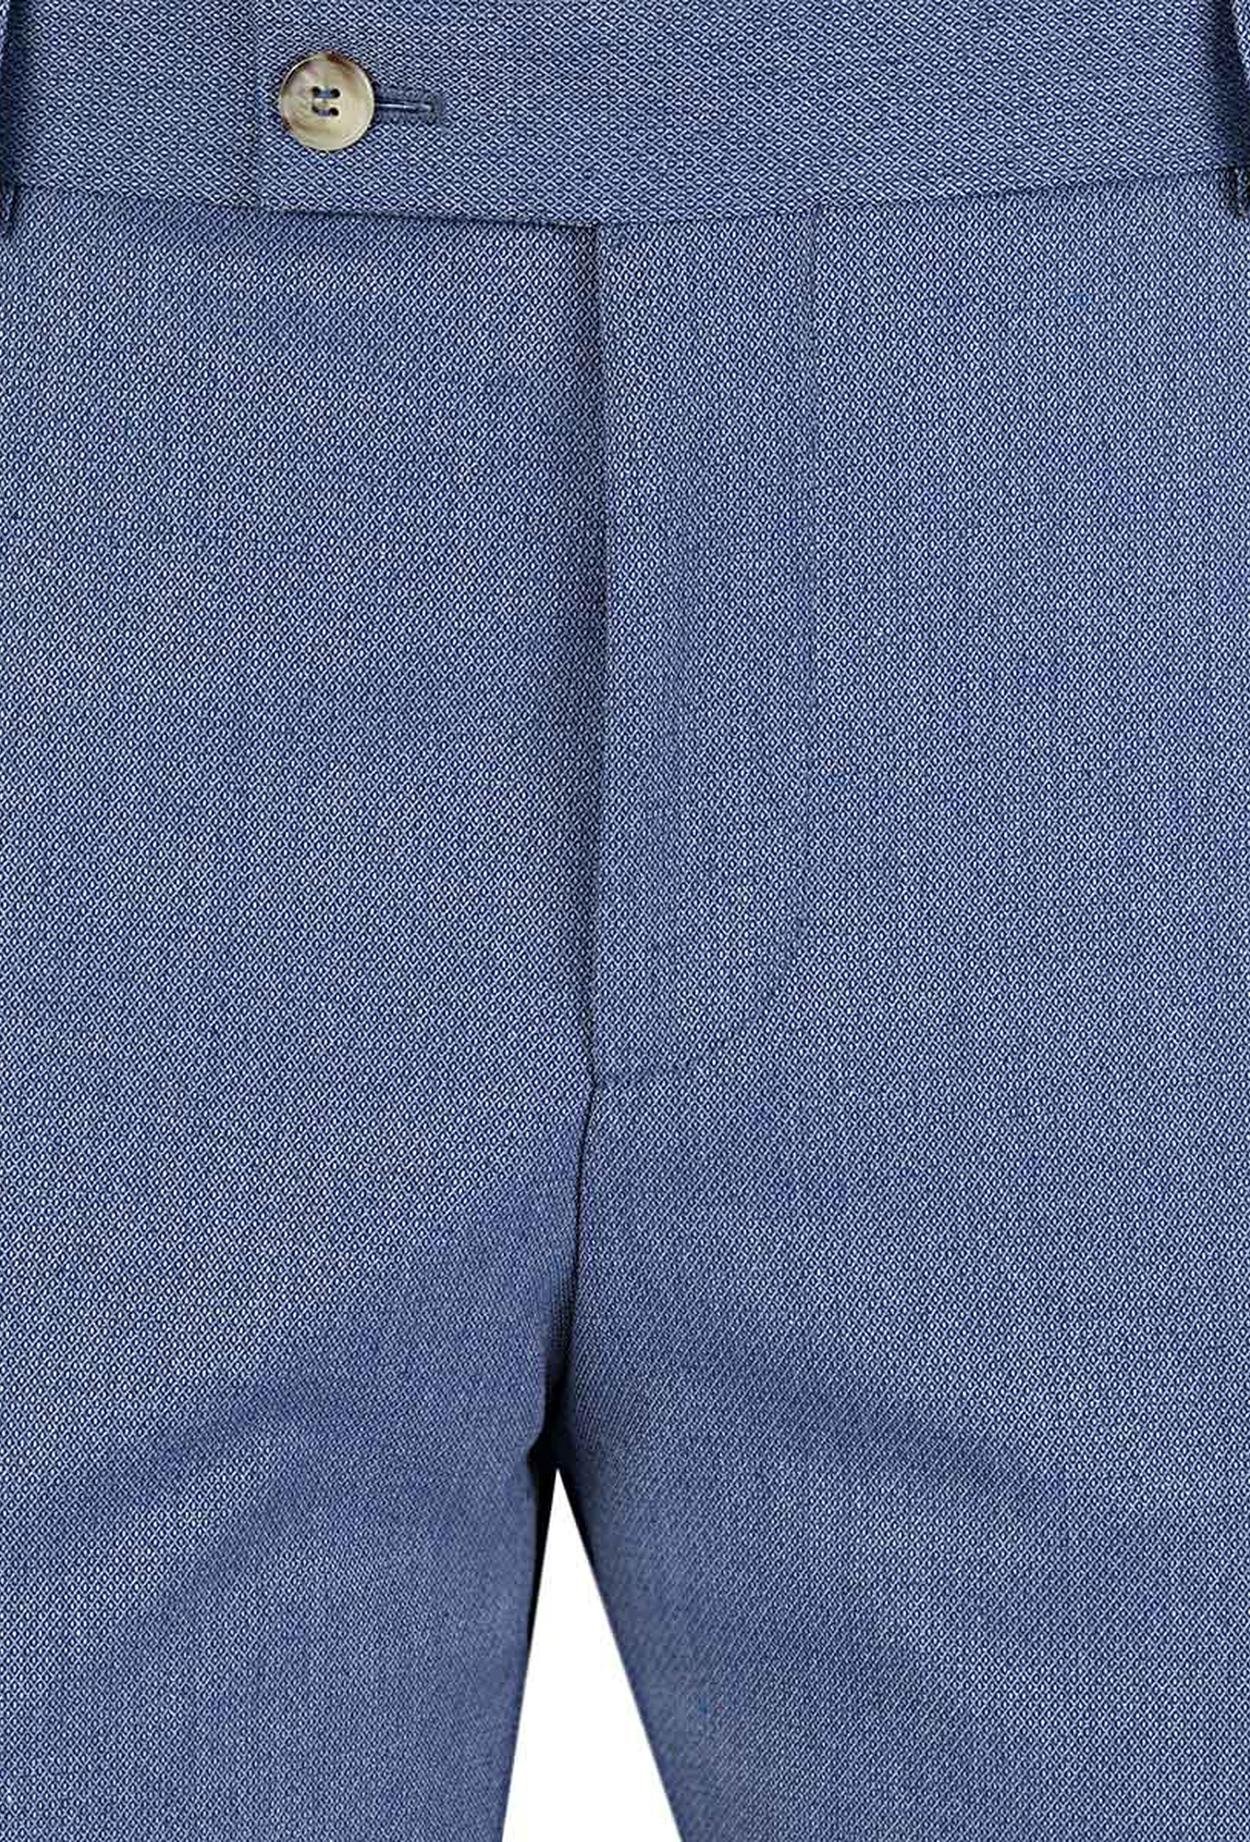 Twn Slim Fit Mavi Desenli Kumaş Pantolon